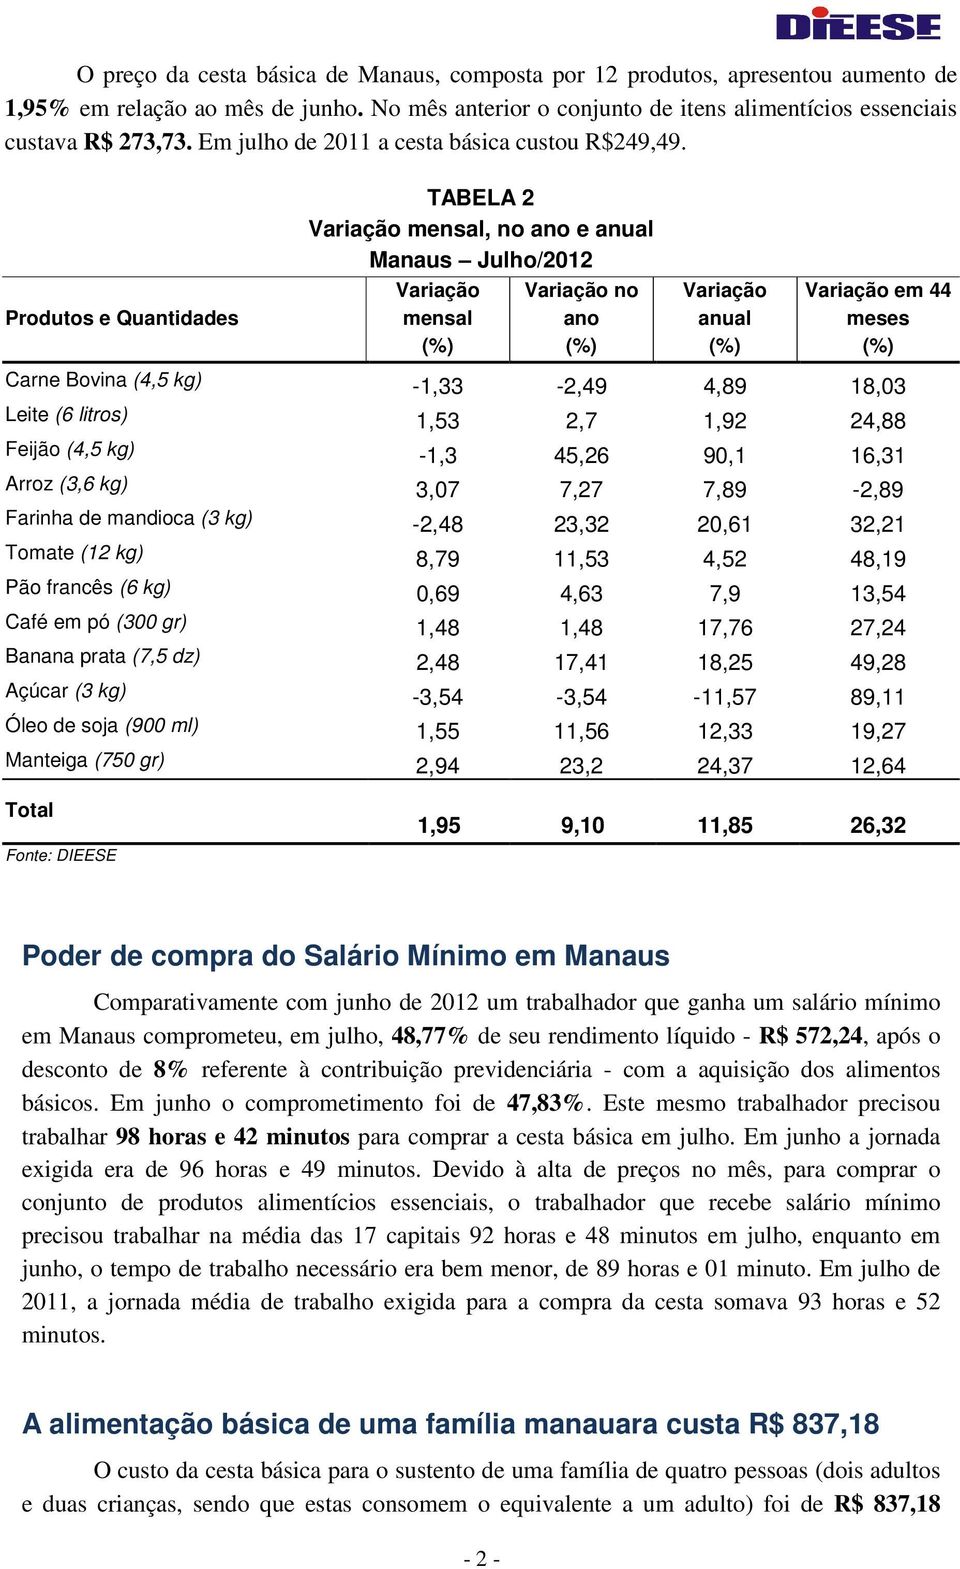 Produtos e Quantidades TABELA 2 mensal, no ano e anual Manaus Julho/2012 mensal no ano anual em 44 meses Carne Bovina (4,5 kg) -1,33-2,49 4,89 18,03 Leite (6 litros) 1,53 2,7 1,92 24,88 Feijão (4,5